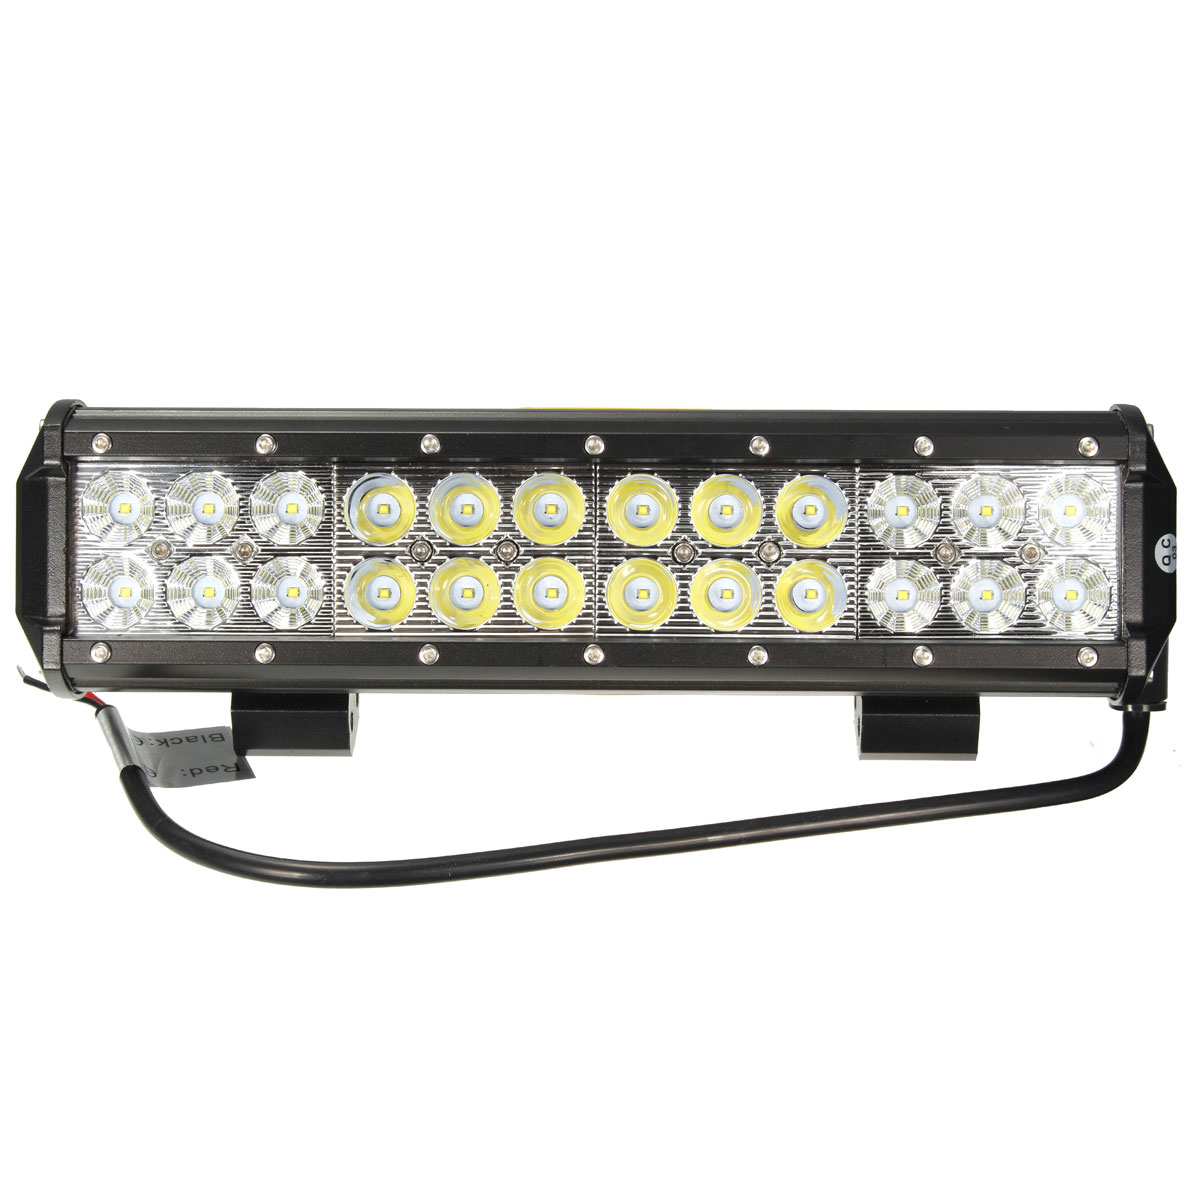 12Inch-72W-LED-Work-Light-Bar-Spot-Flood-Combo-Beam-6000K-for-Off-Road-4X4-ATV-4WD-UTE-1013673